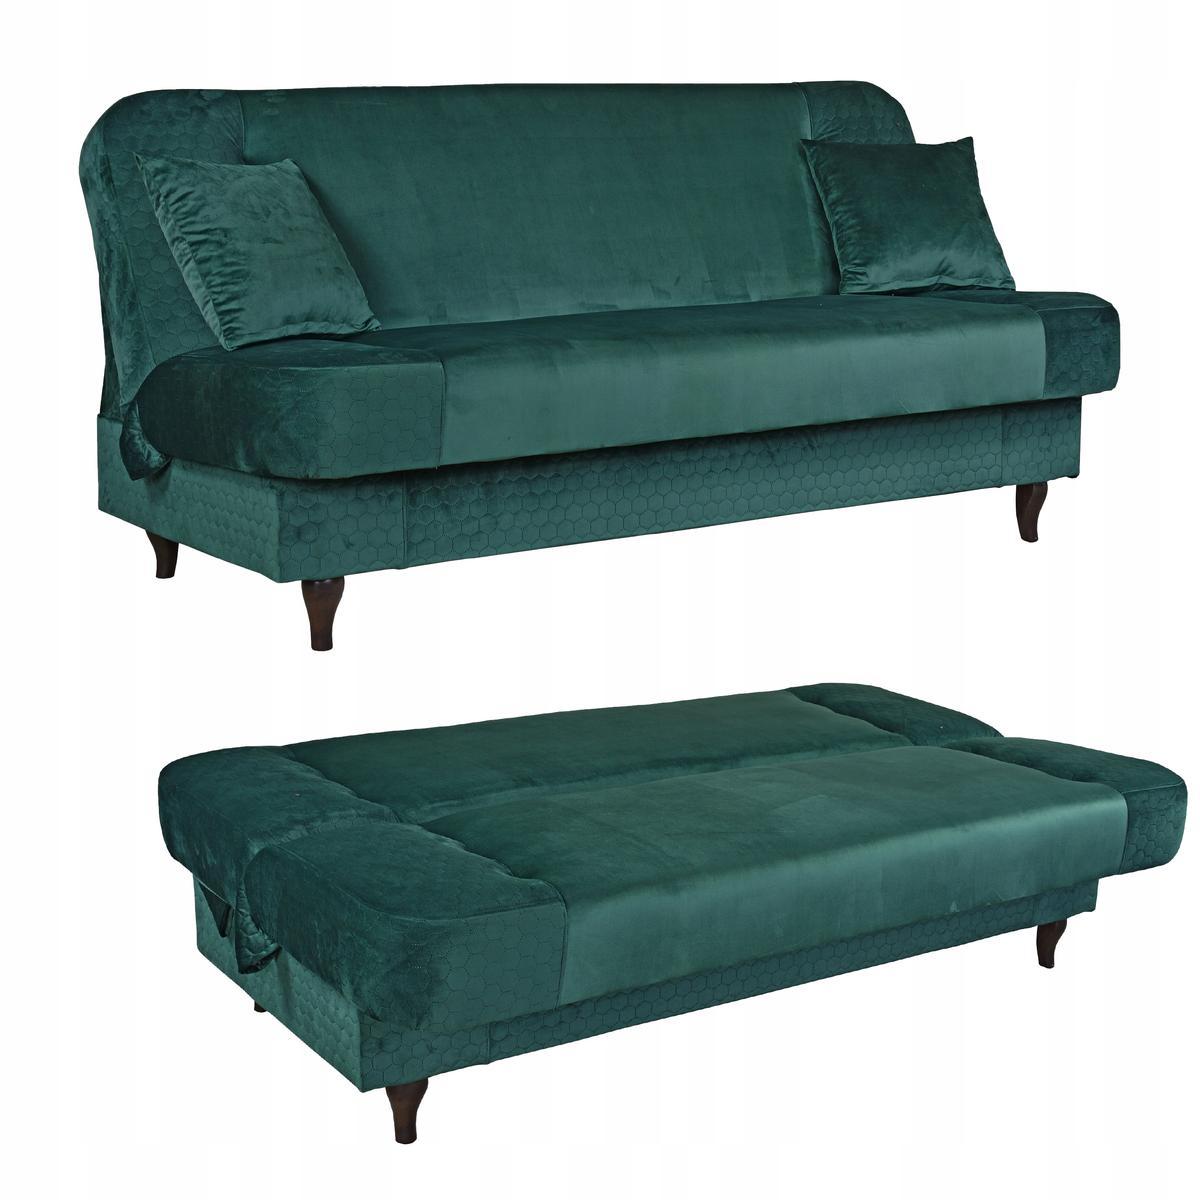 Wersalka sofa kanapa rozkładana Iza Family Meble nr. 1